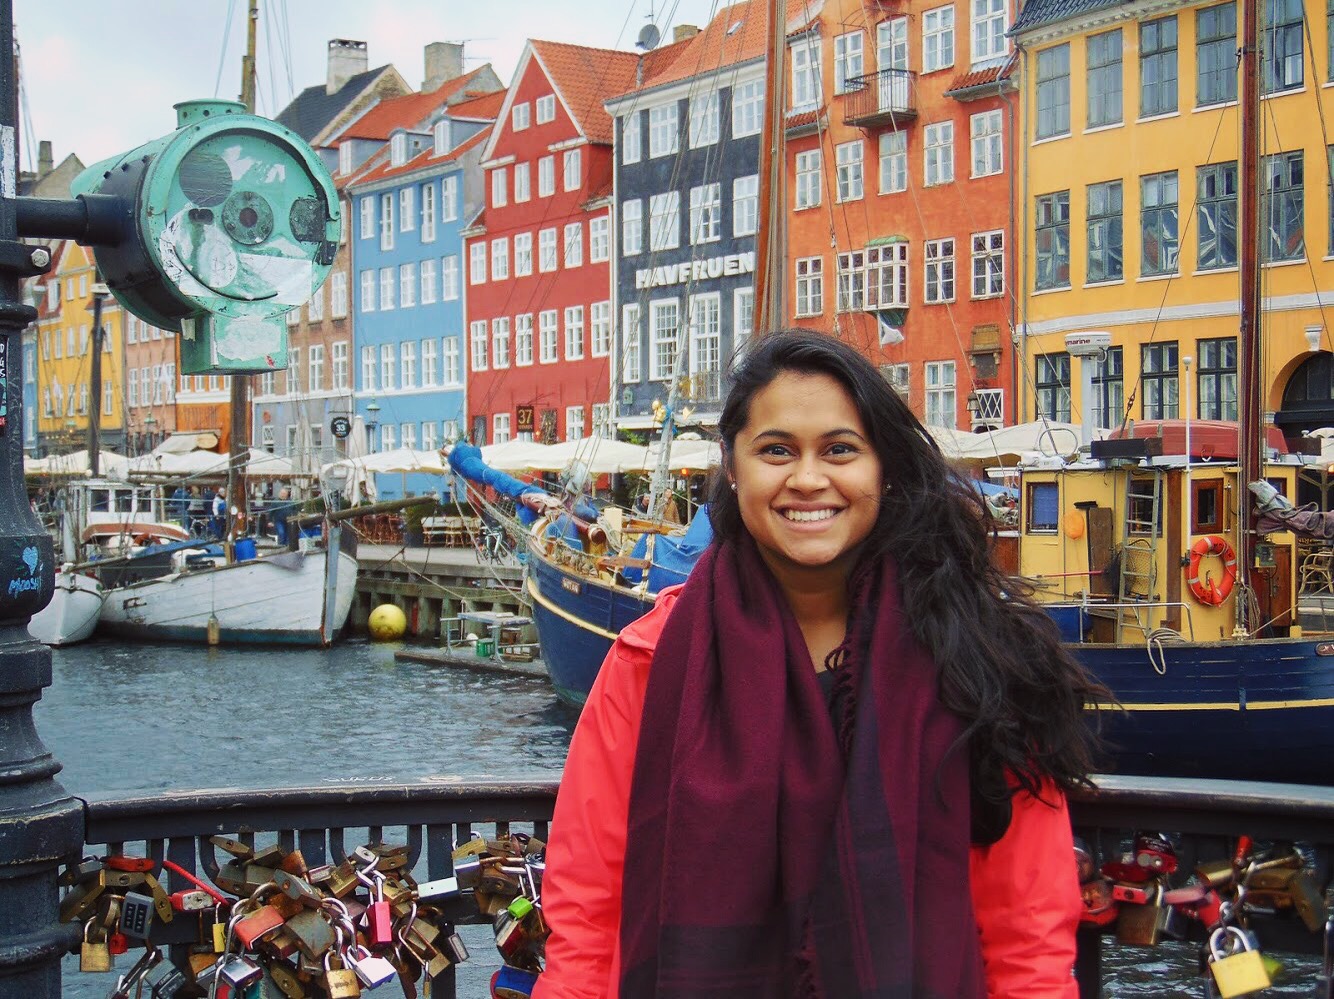 Me in front of Nyhavn, Copenhagen's iconic port